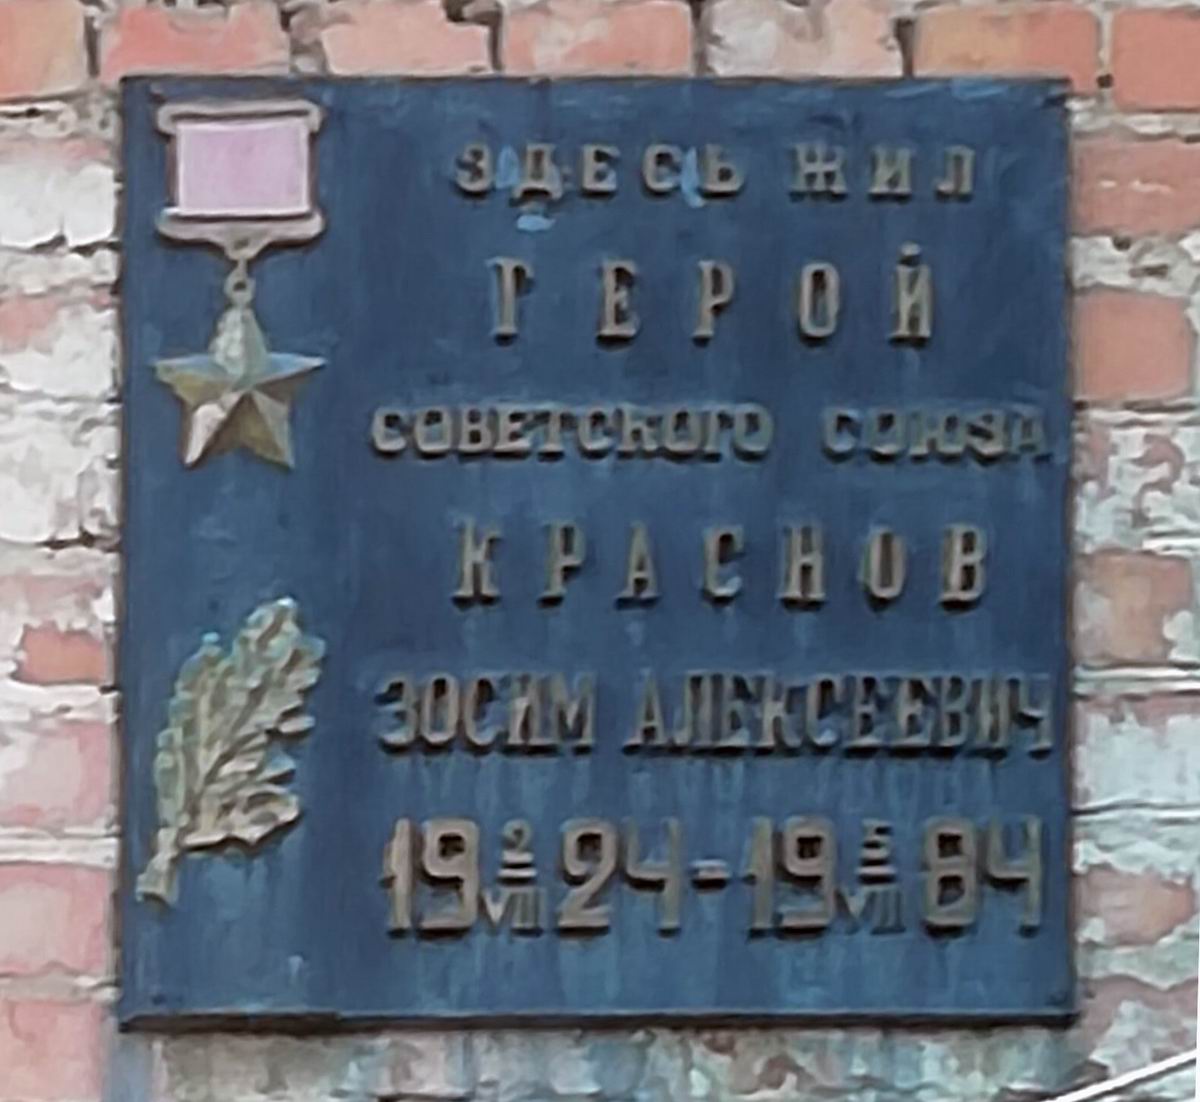 Мемориальная доска в городе Донецк